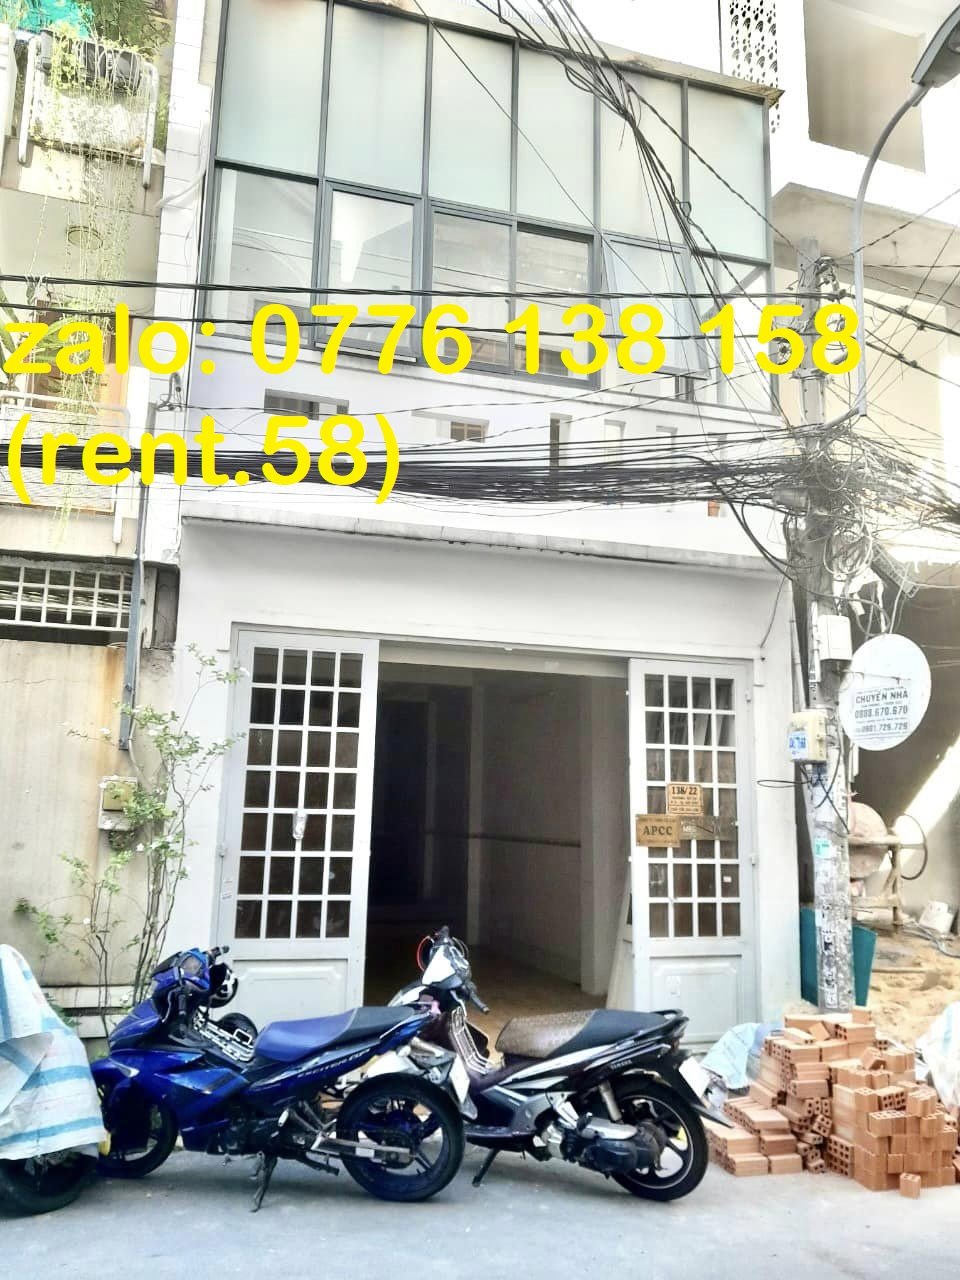 CHO THUÊ nhà đường số 20 Gò Vấp – Giá thuê 11.5 triệu/tháng gần Lê Đức Thọ, Quảng Hàm, Phan Văn Trị 1